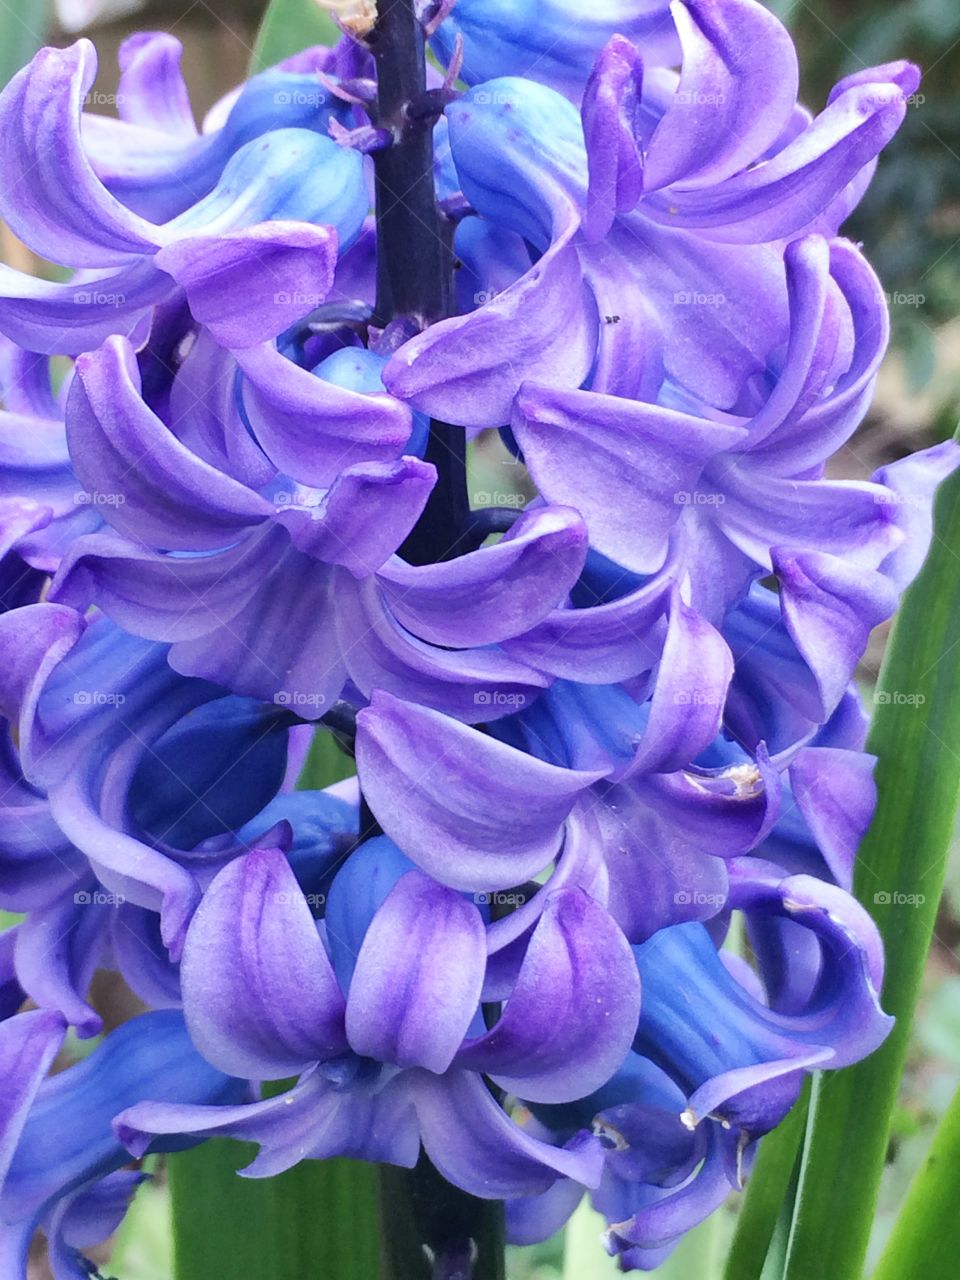 Purple hyacinth flowers. Purple hyacinth flowers in spring season